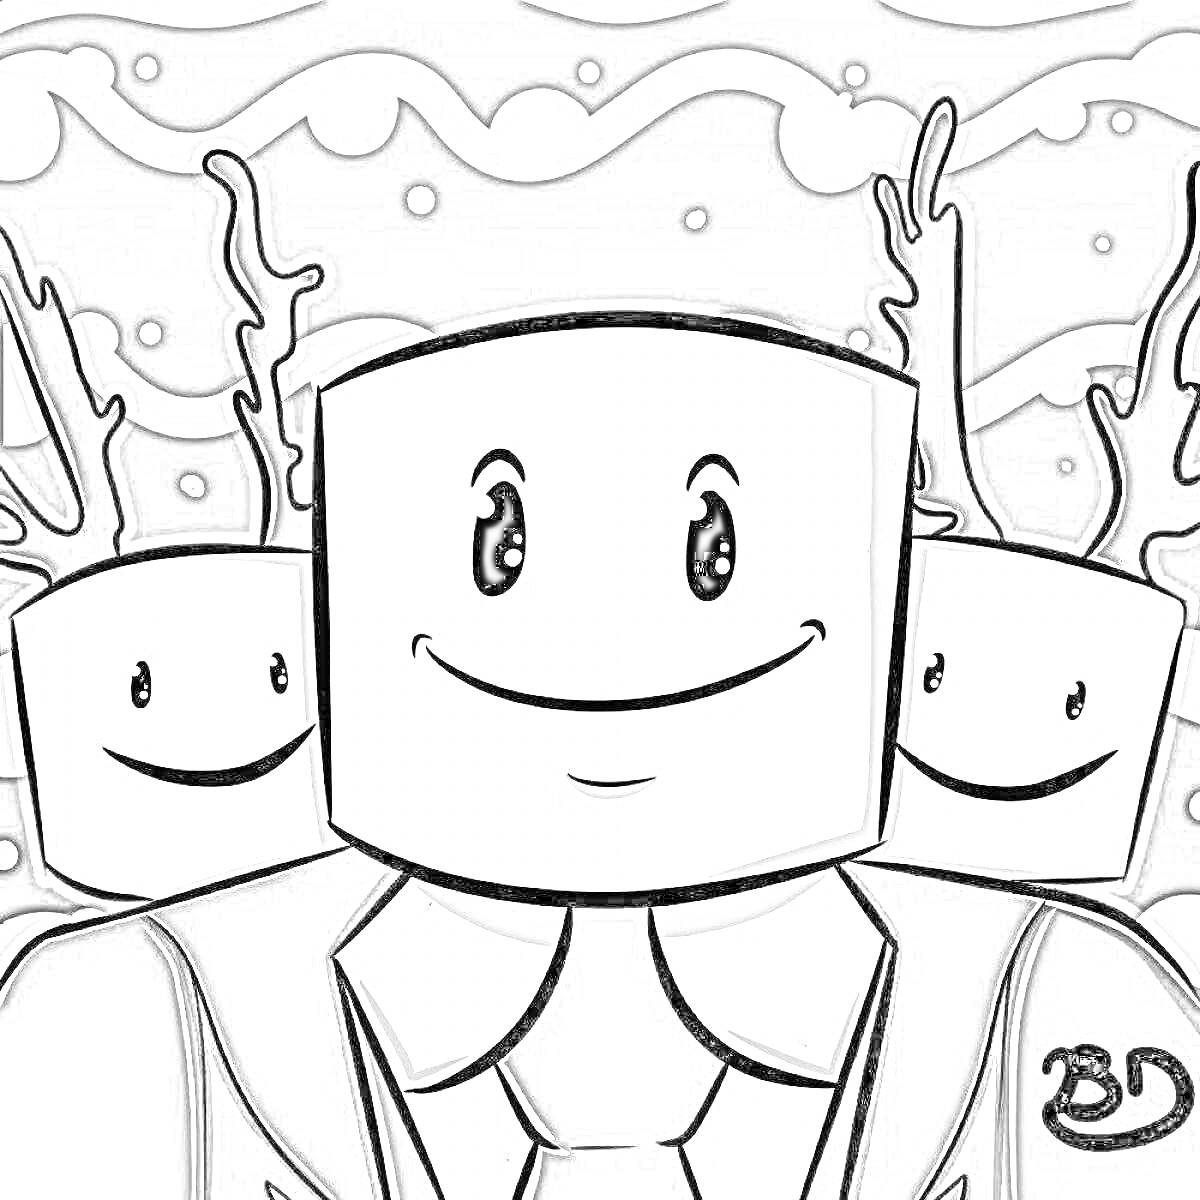 Раскраска Чудо чай Роблокс. Персонажи с квадратными головами в костюмах, с рогами в фоне, черно-бело изображение